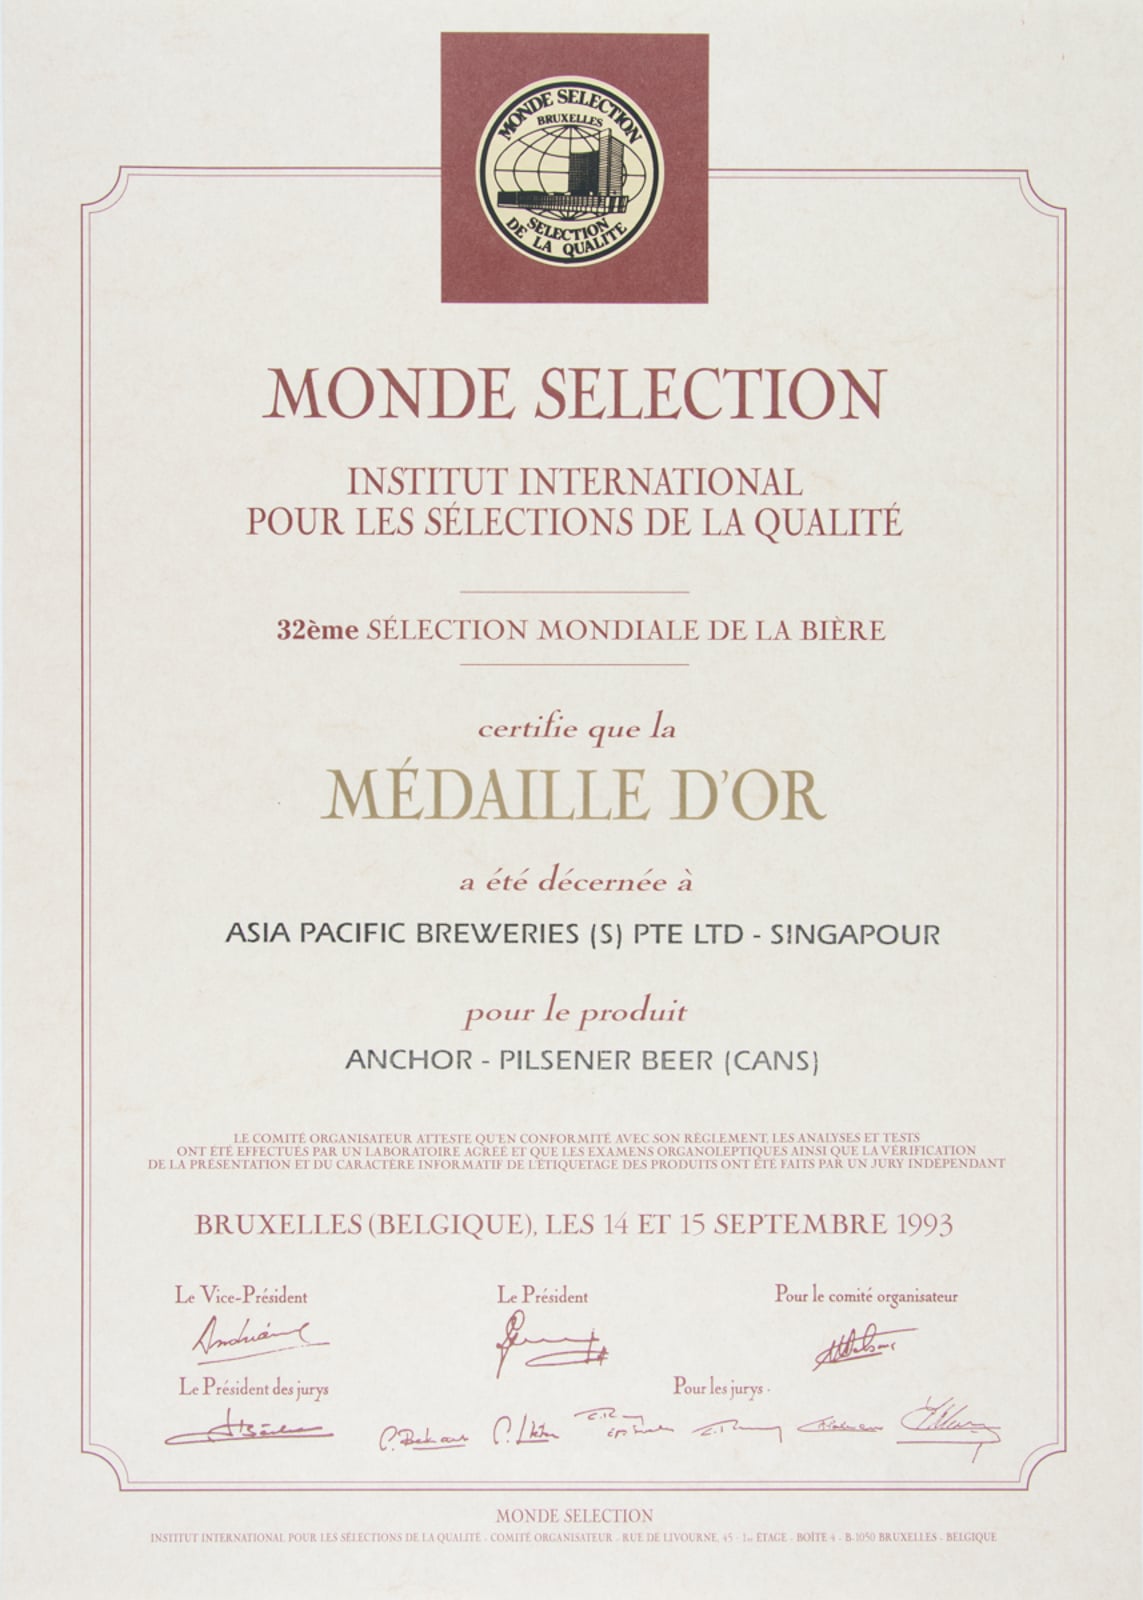 Anchor Pilsener Beer (Cans) Médaille d'Or, Monde Sélection Certificate 1993